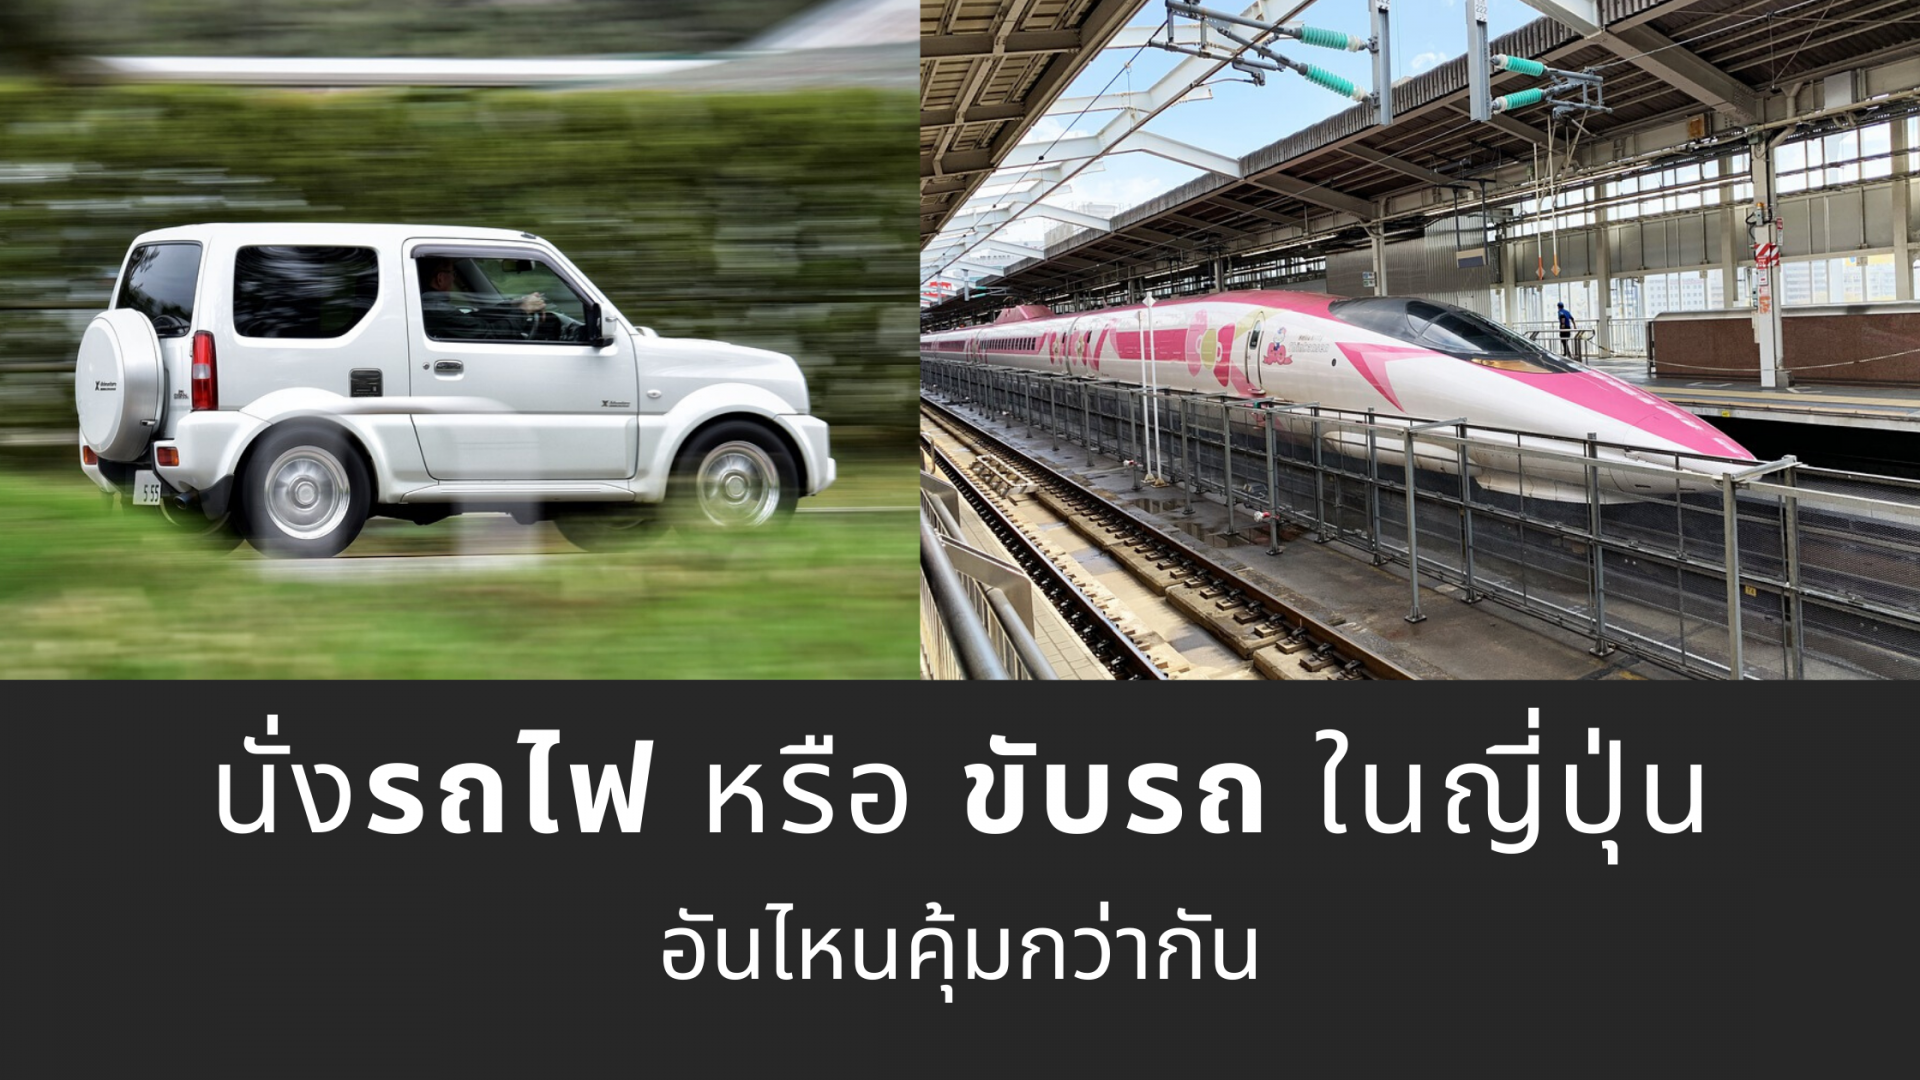 นั่งรถไฟ หรือ ขับรถ ในญี่ปุ่นอันไหนคุ้มกว่ากัน